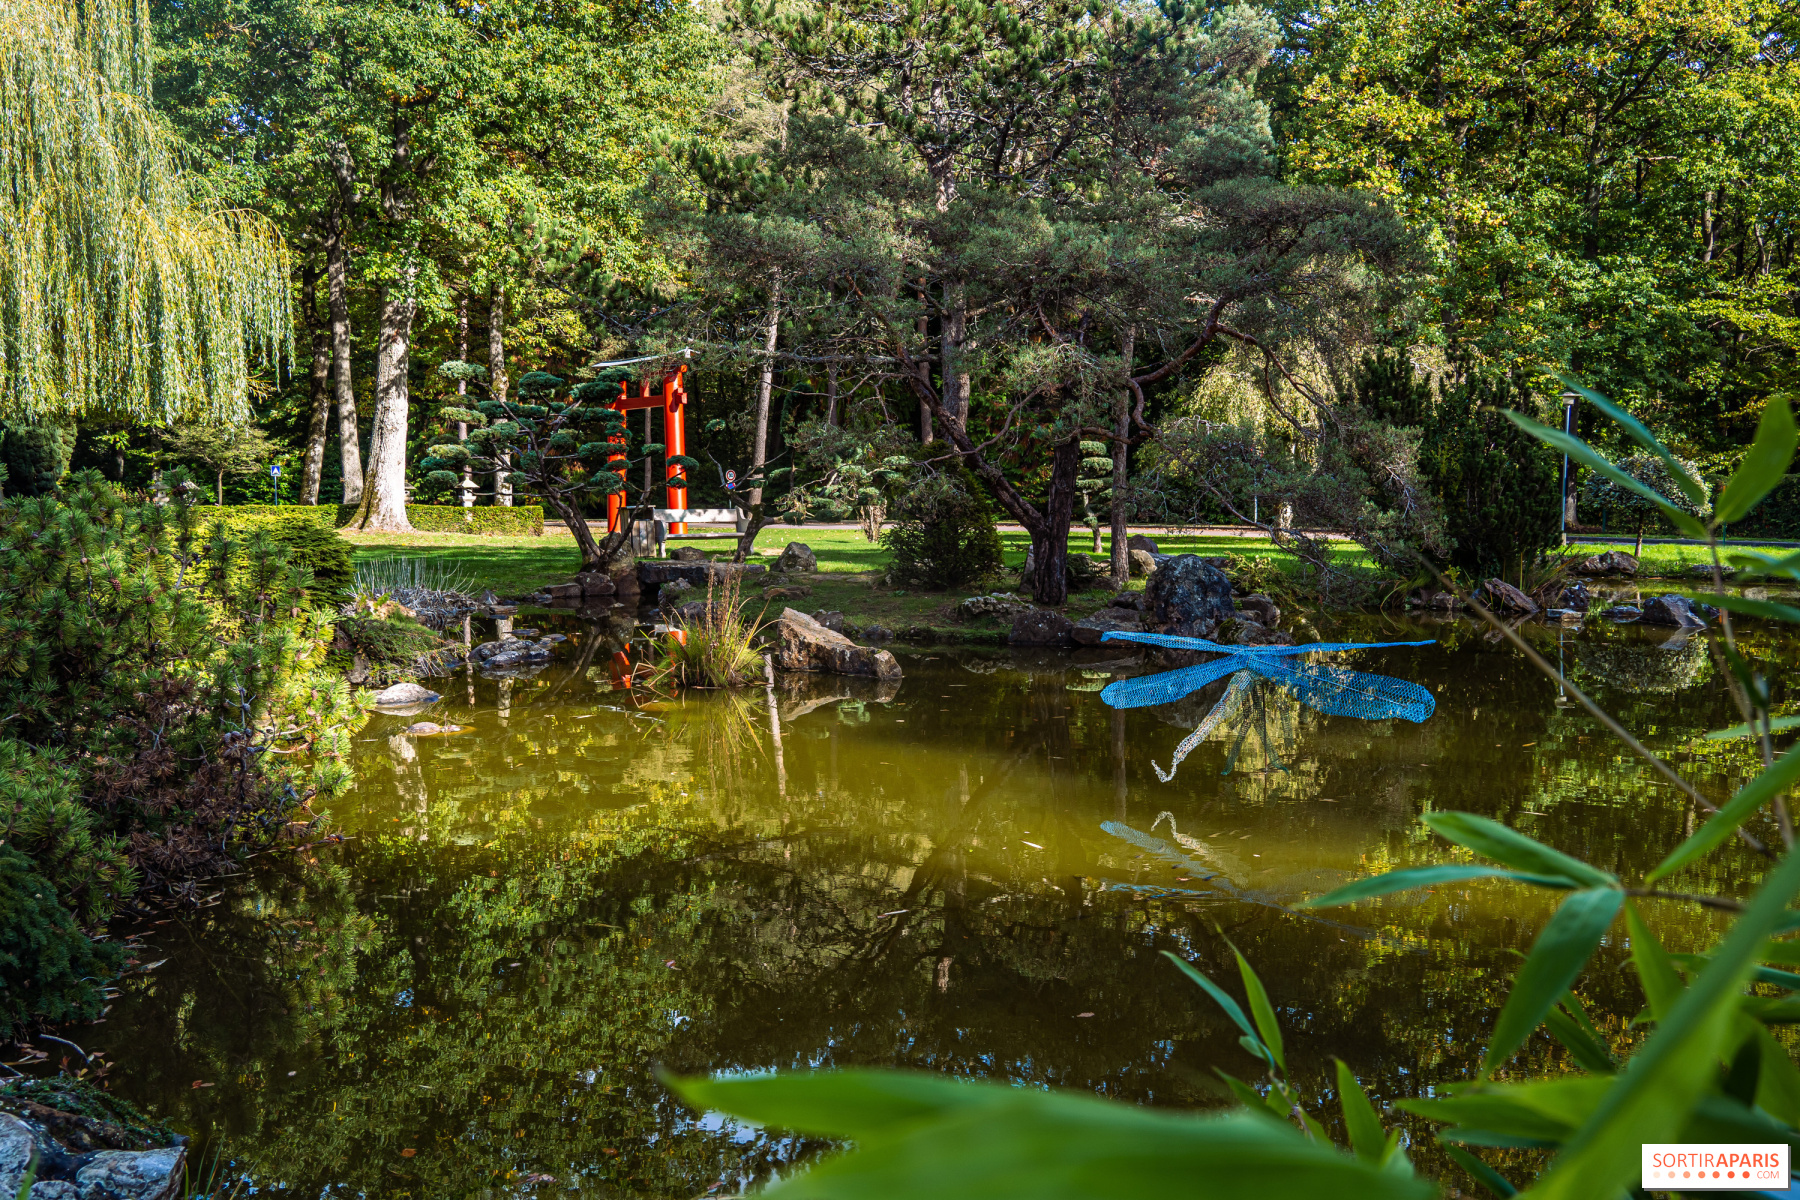 Les Jardins Japonais de Favières, the free Zen garden park closed